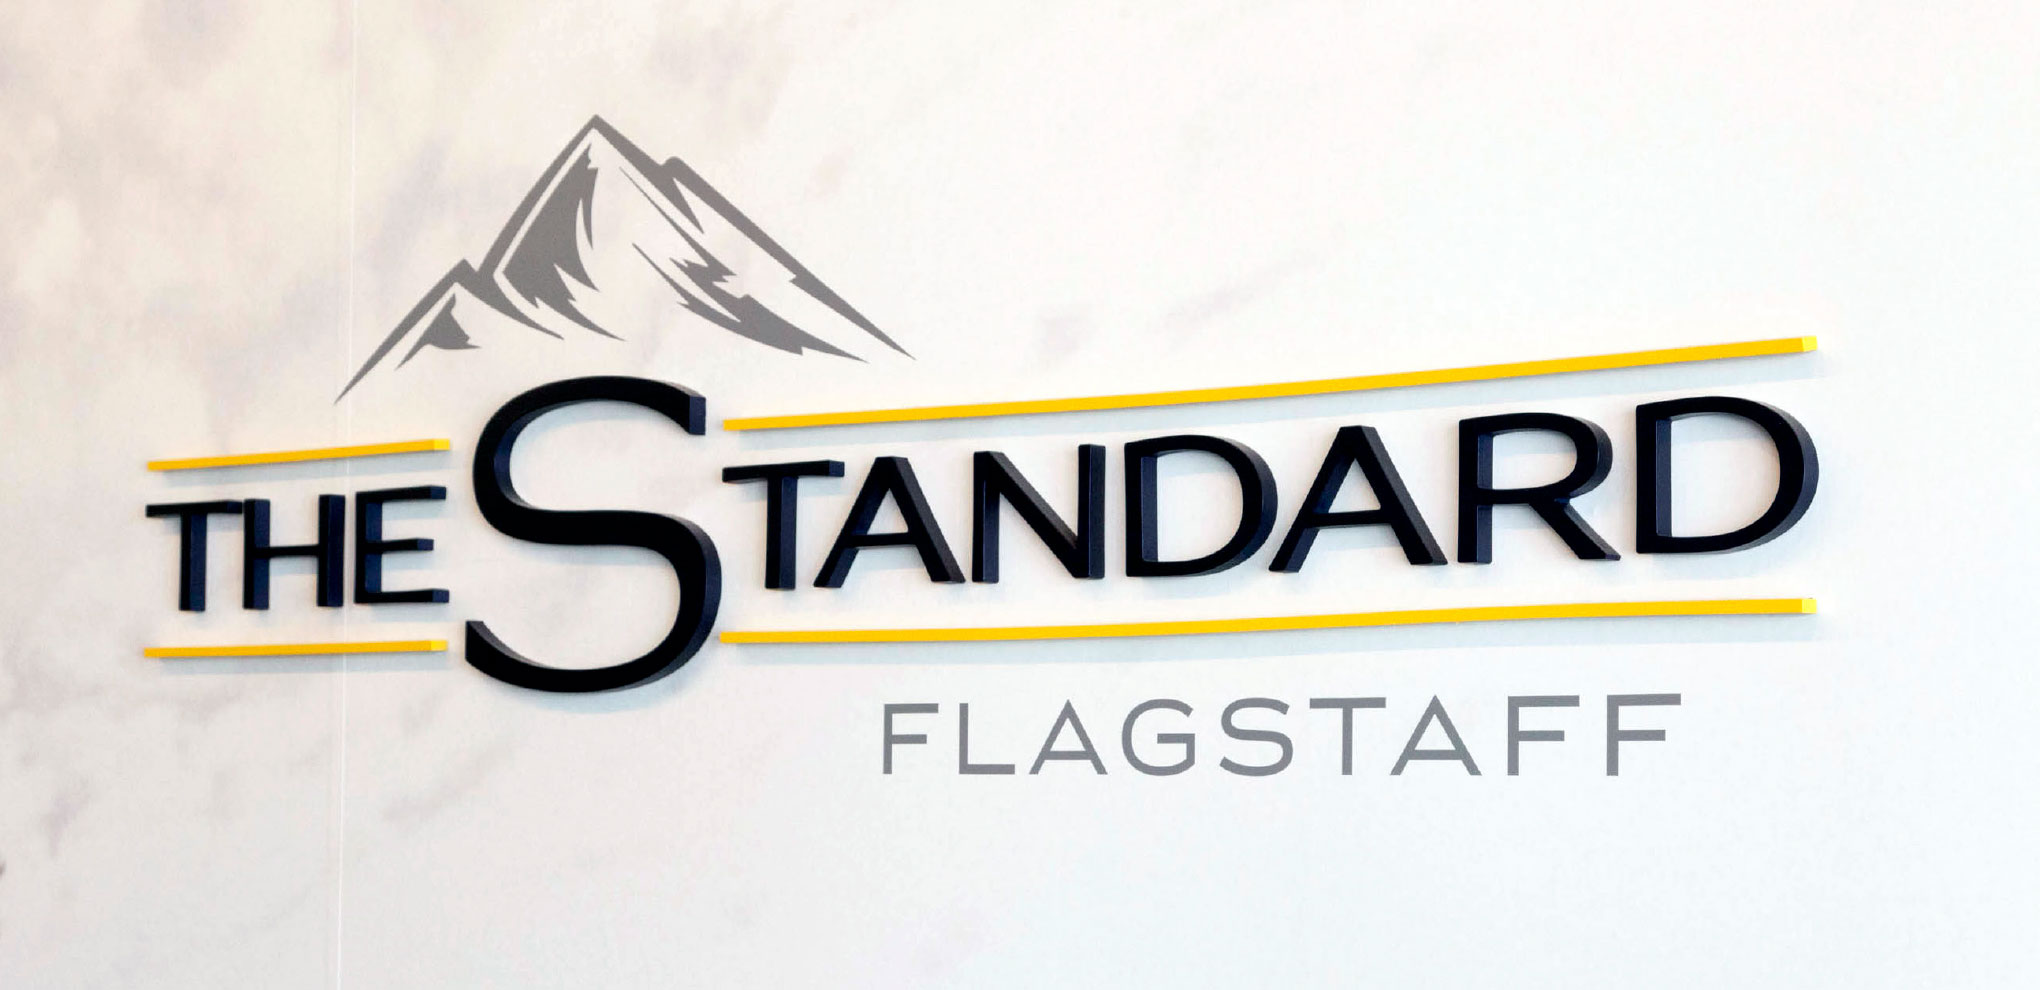 The Standard Flagstaff